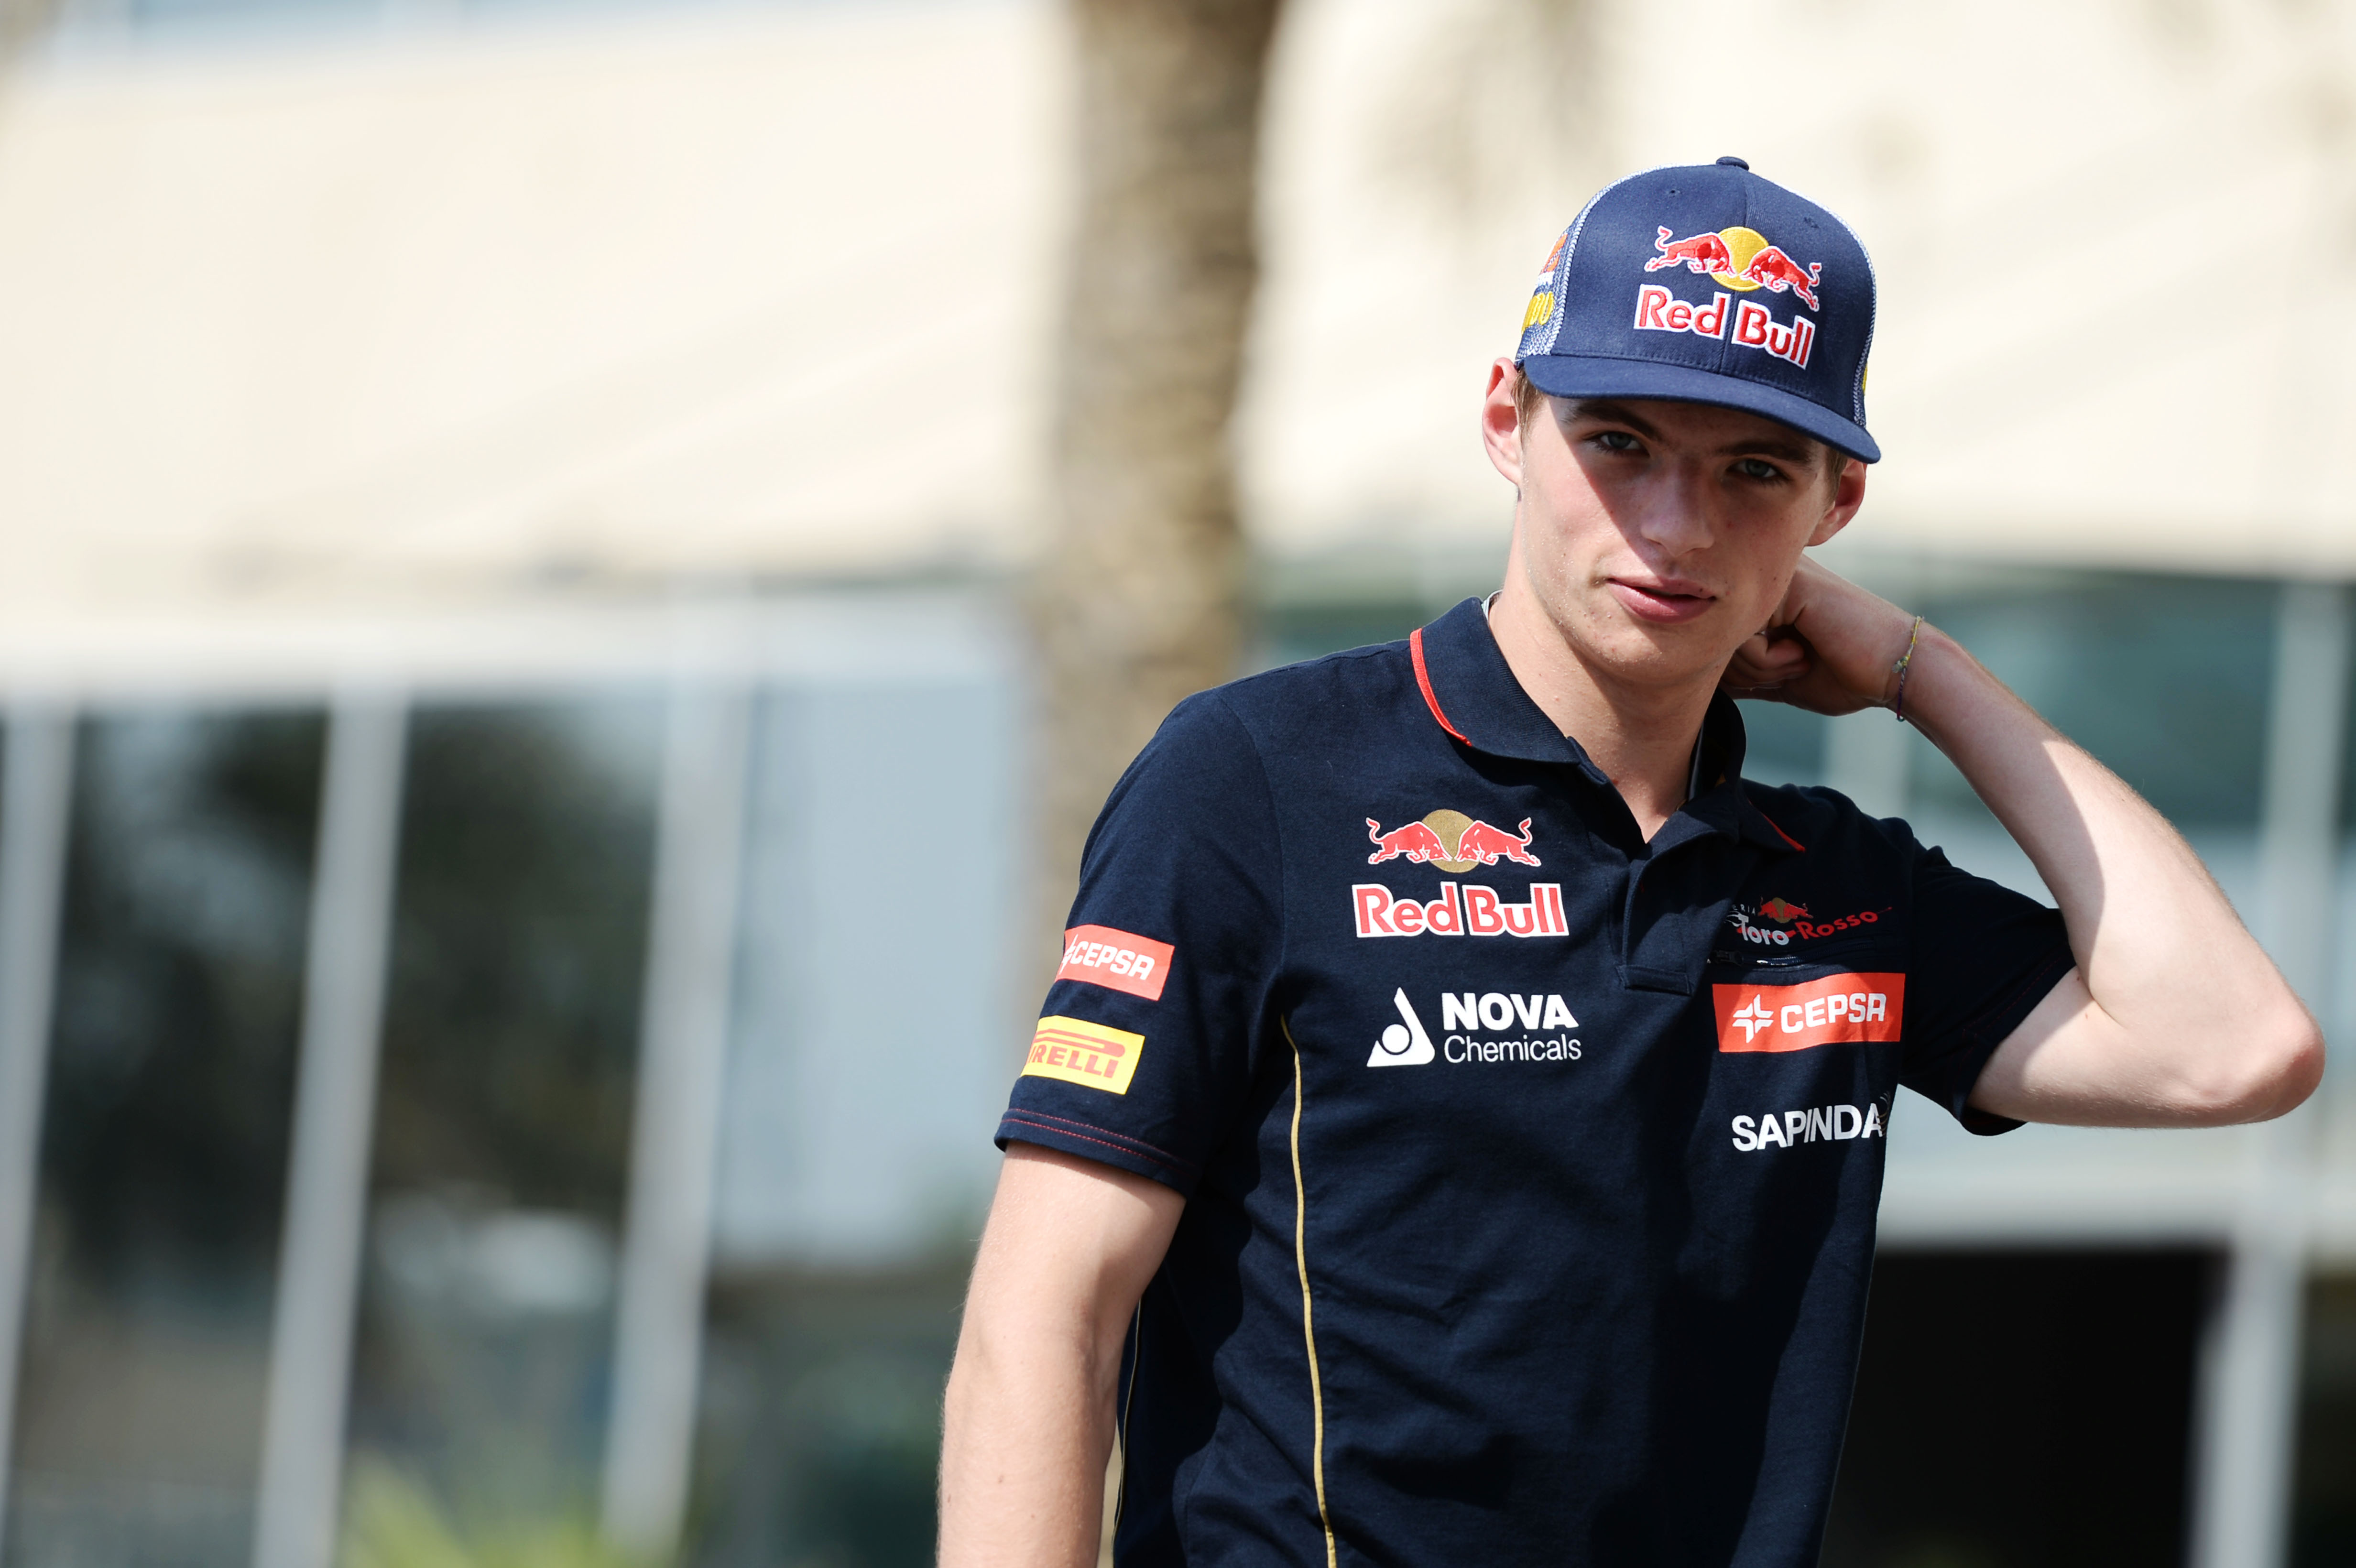 Max kiest voor startnummer 33 - Formule1.nl